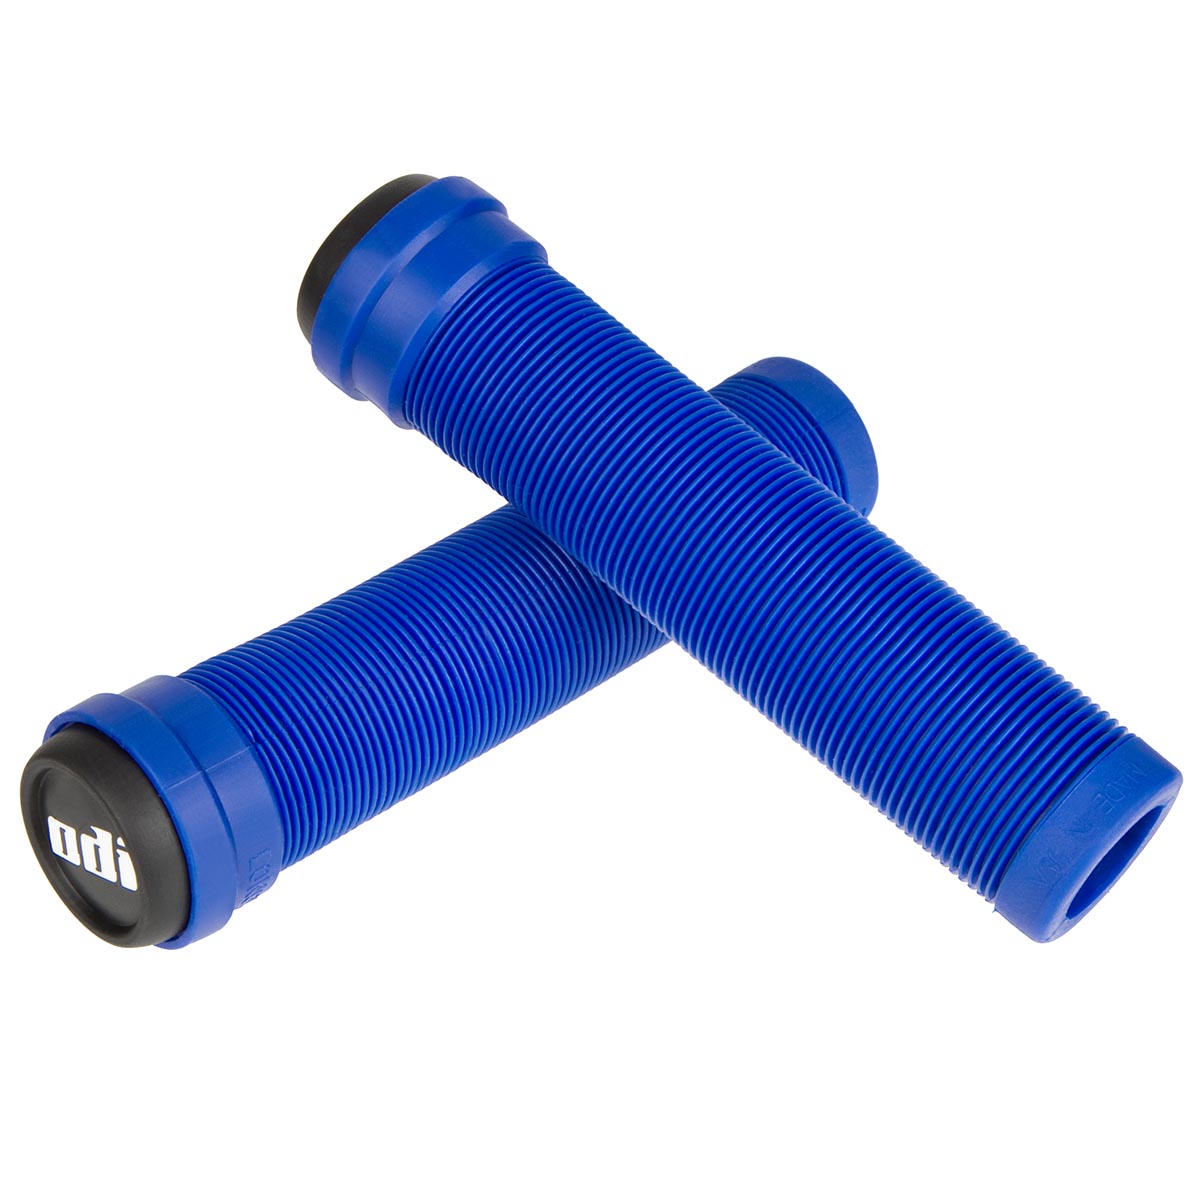 ODI MTB Grips Longneck SL Flangeless Blue, 135 mm